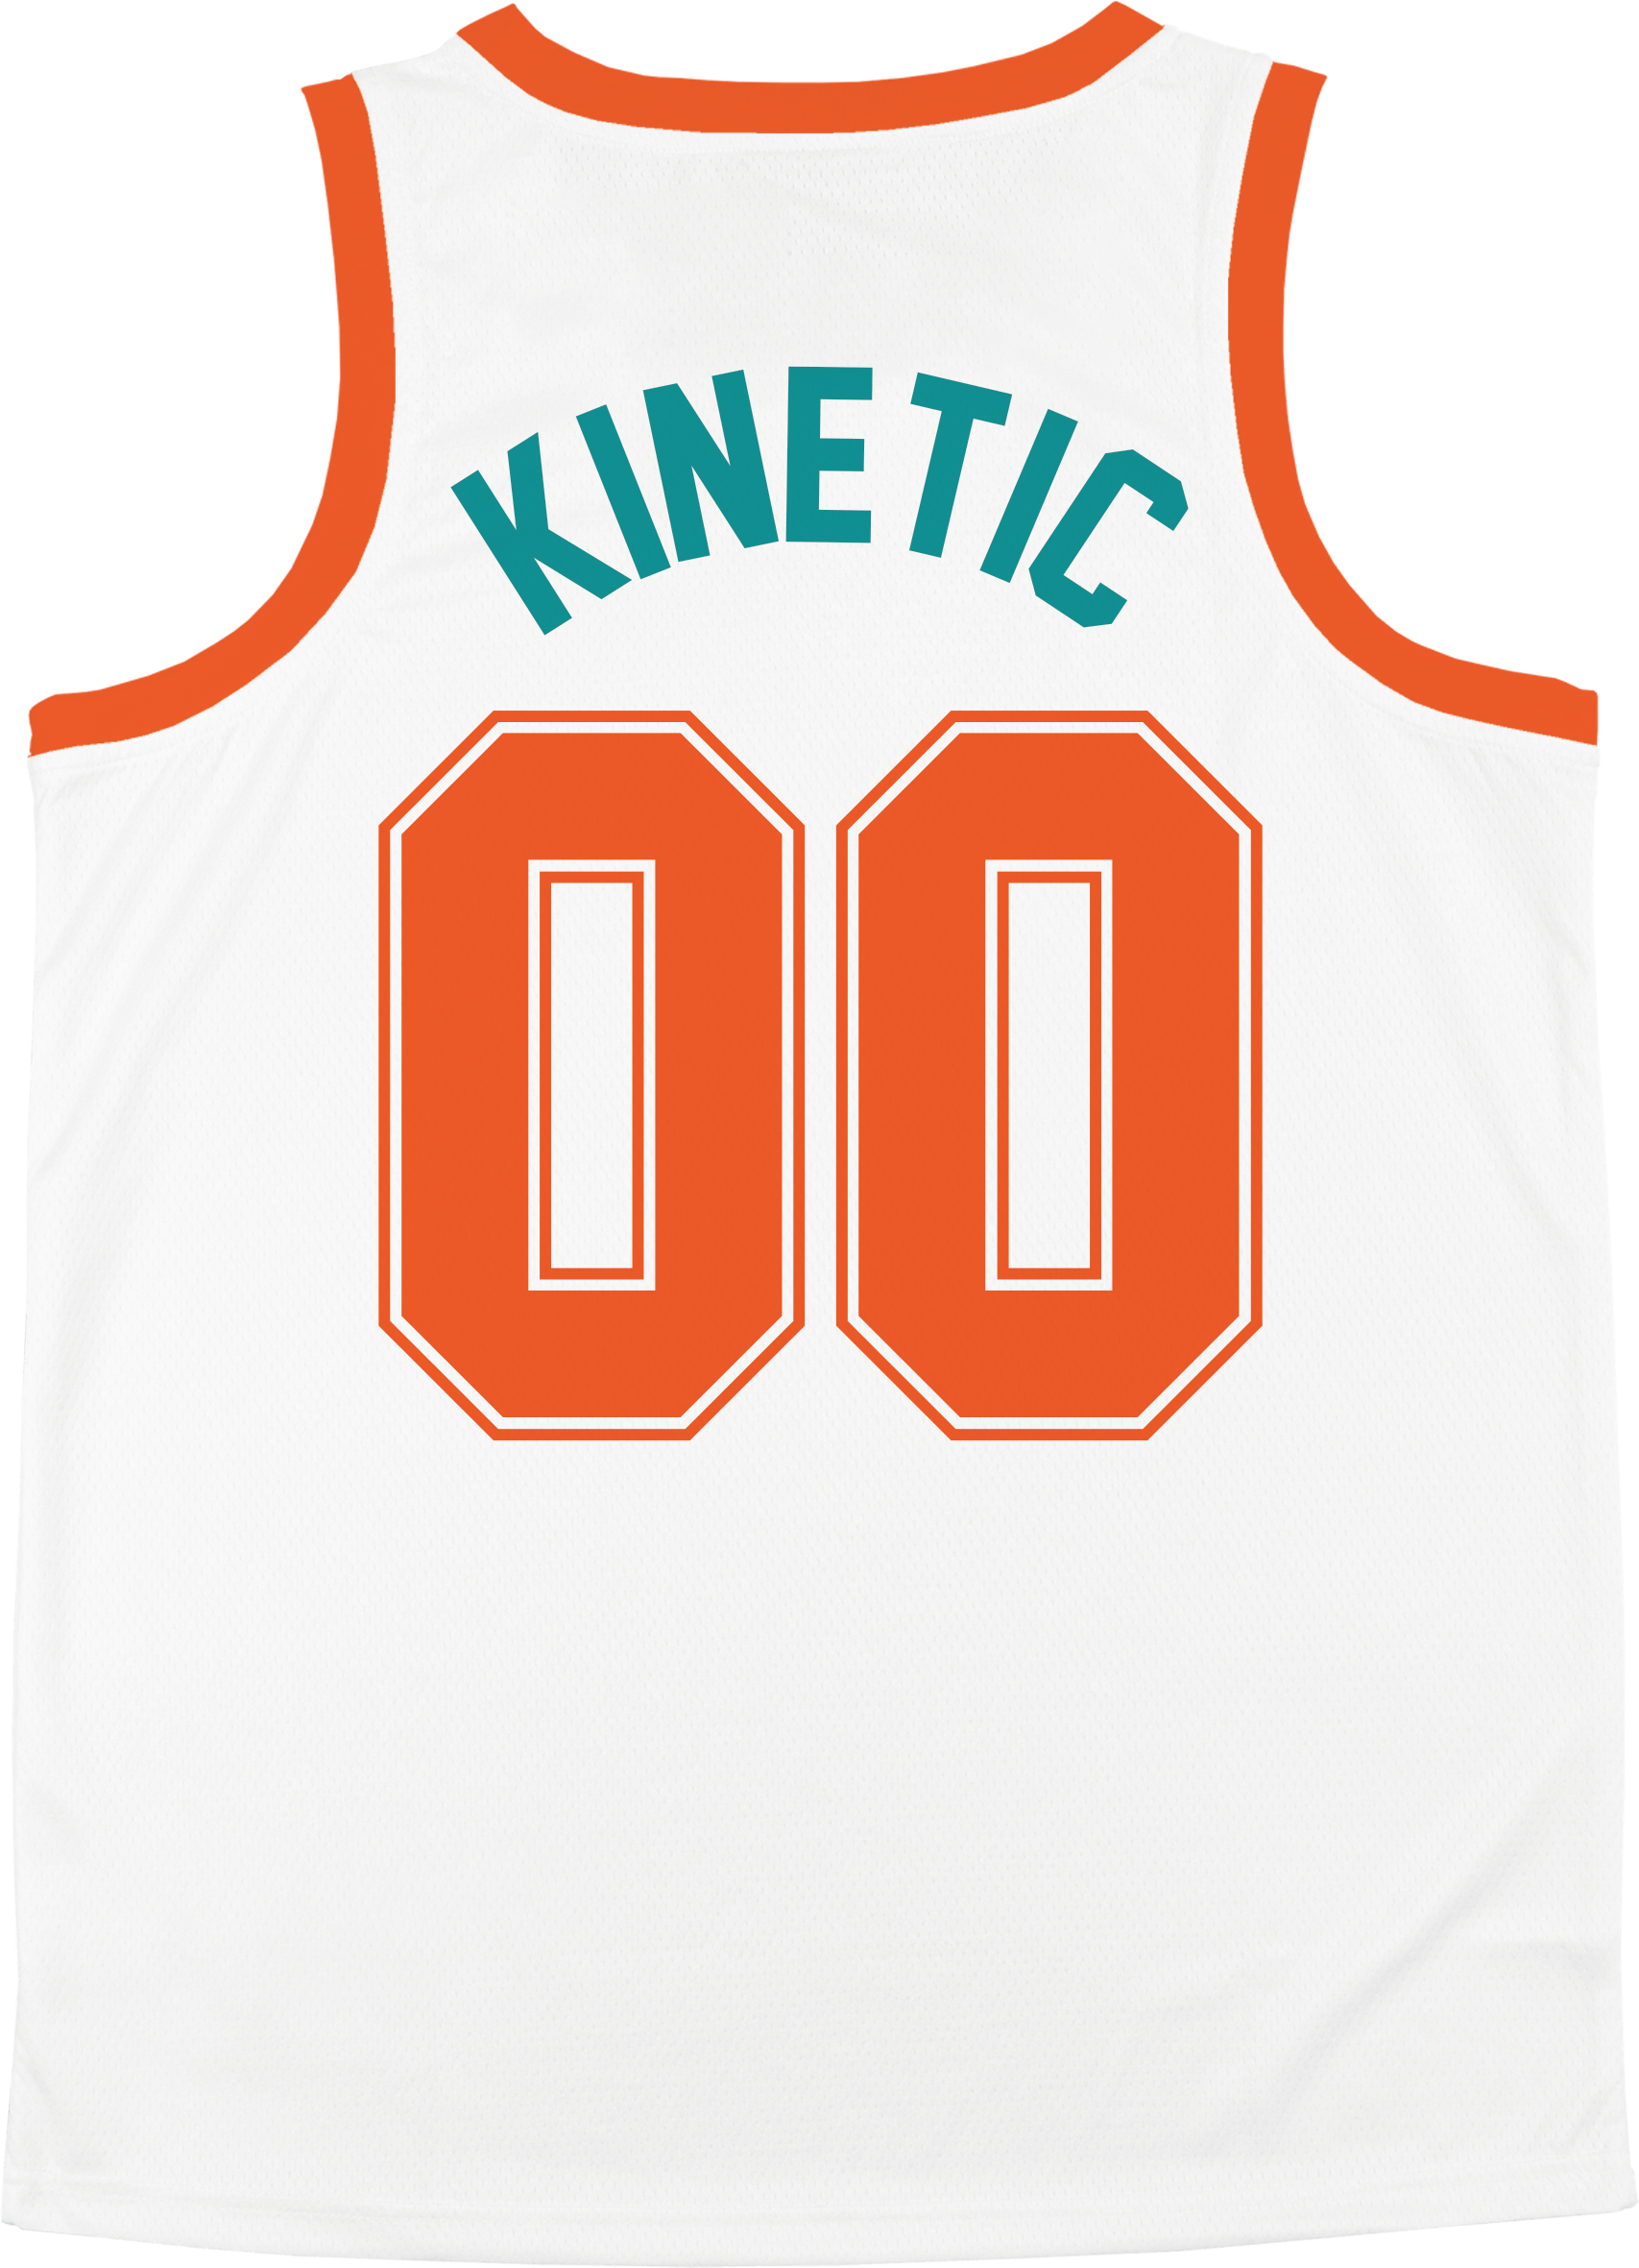 Pi Kappa Phi - Tropical Basketball Jersey Premium Basketball Kinetic Society LLC 